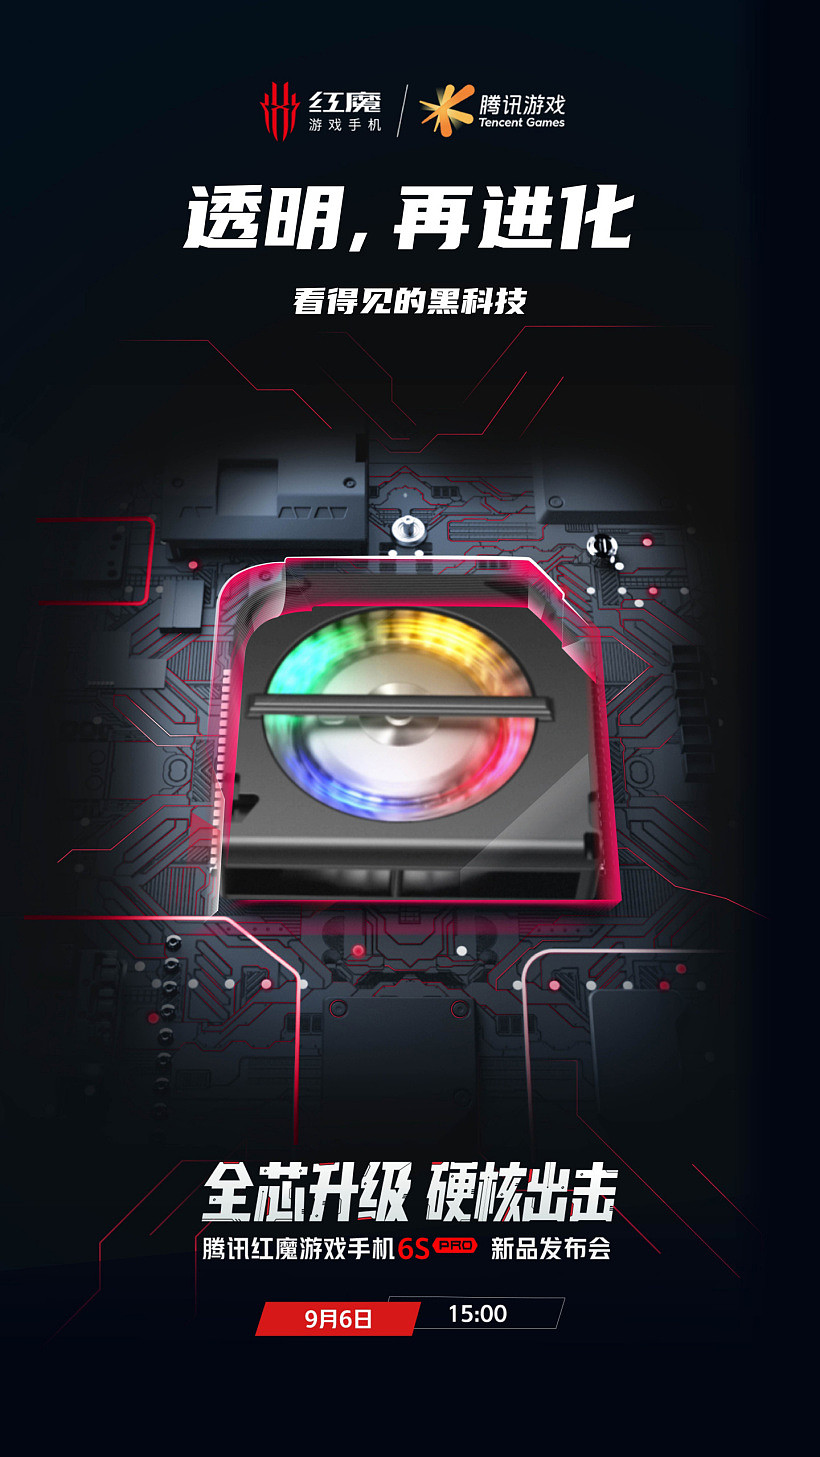 腾讯红魔游戏手机 6S Pro 预热：透明后盖可见散热风扇，9 月 6 日发布 - 1